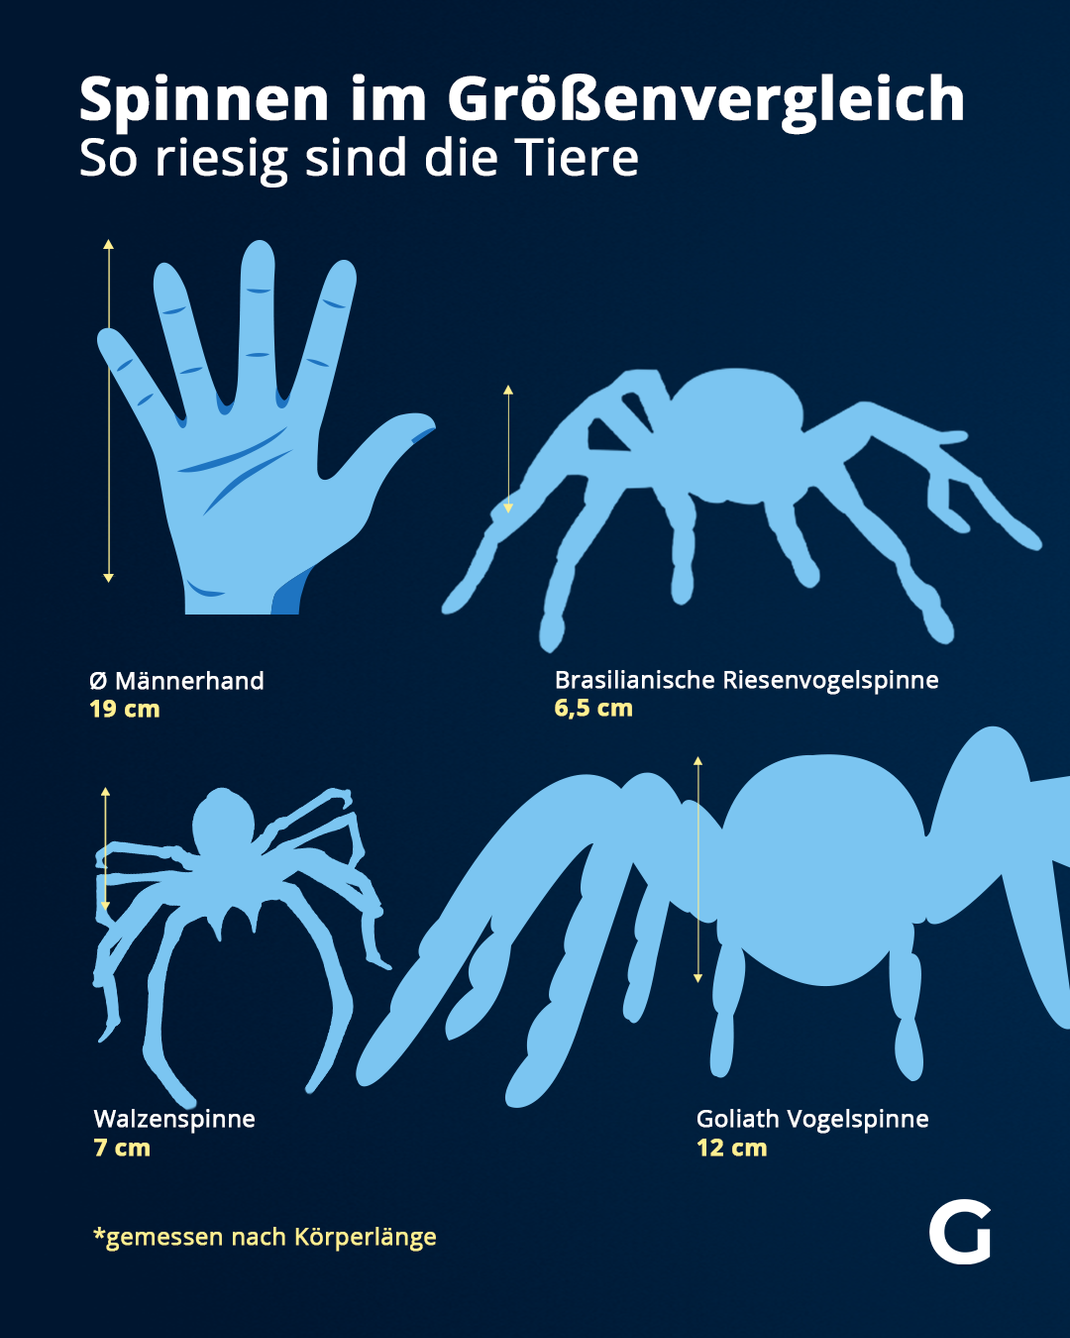 Das sind die größten Spinnen gemessen nach ihrer Körperlänge